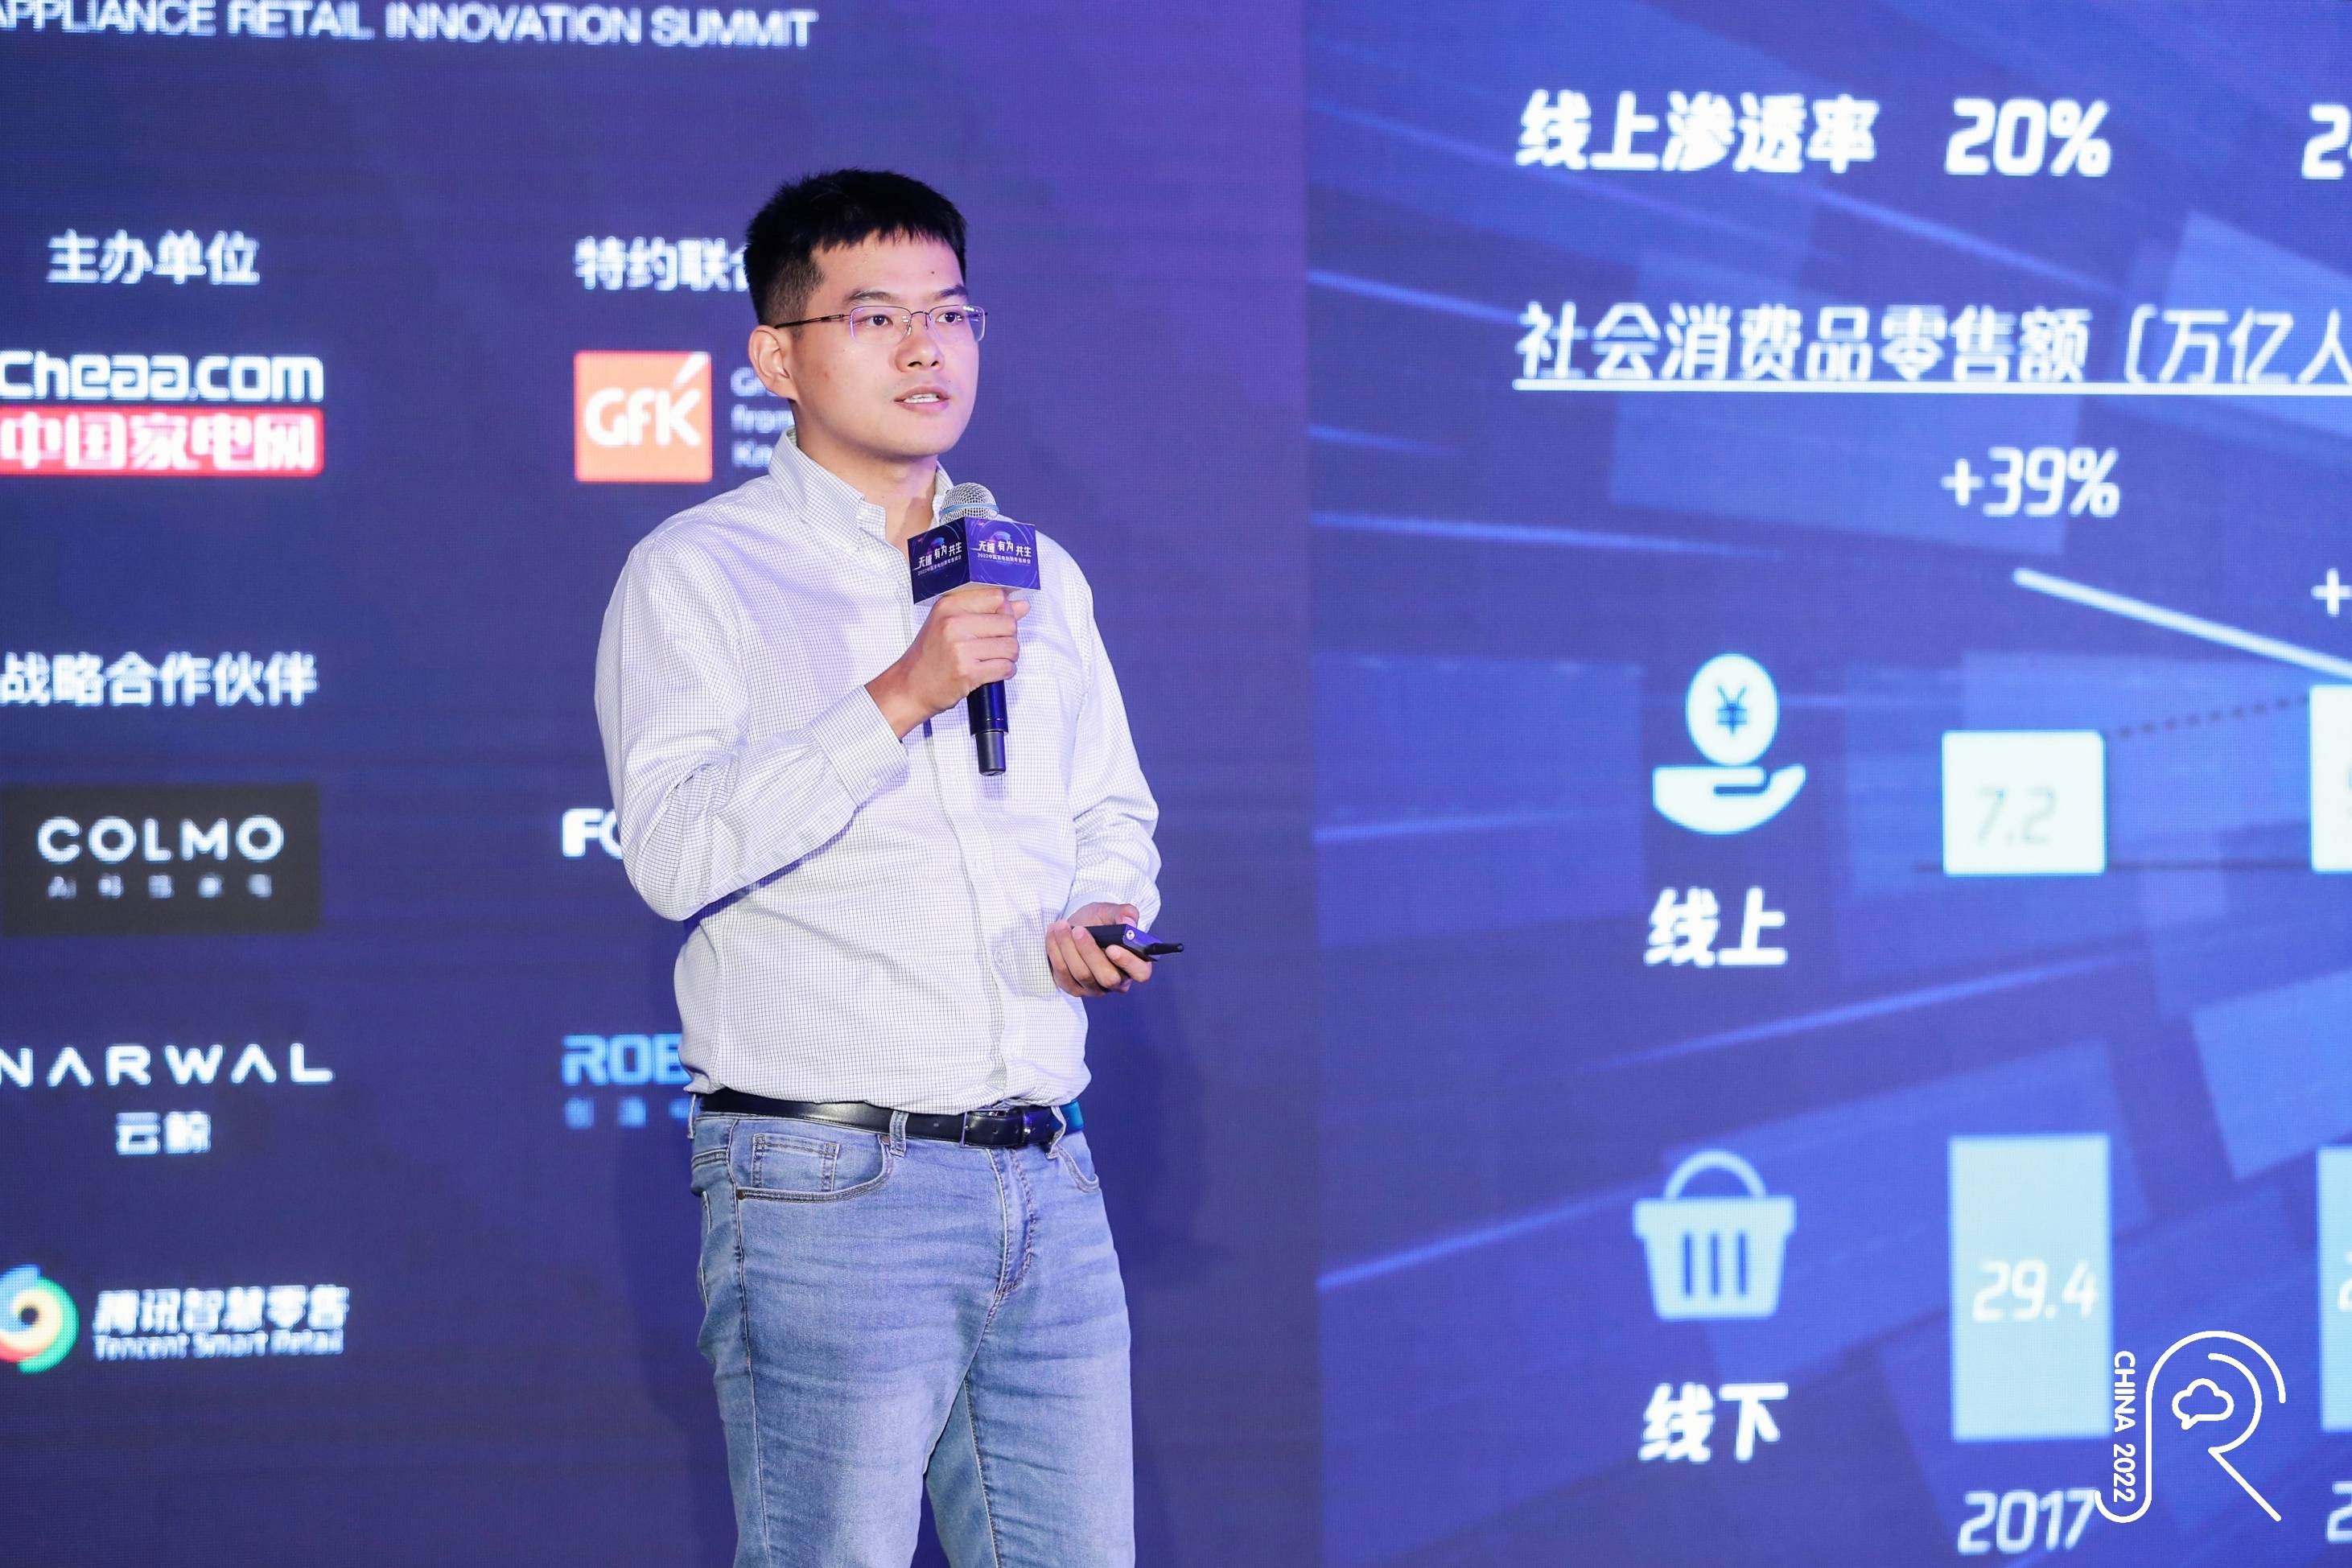 腾讯智慧零售李洋出席2022中国家电创新零售峰会 分享3C行业最新私域打法